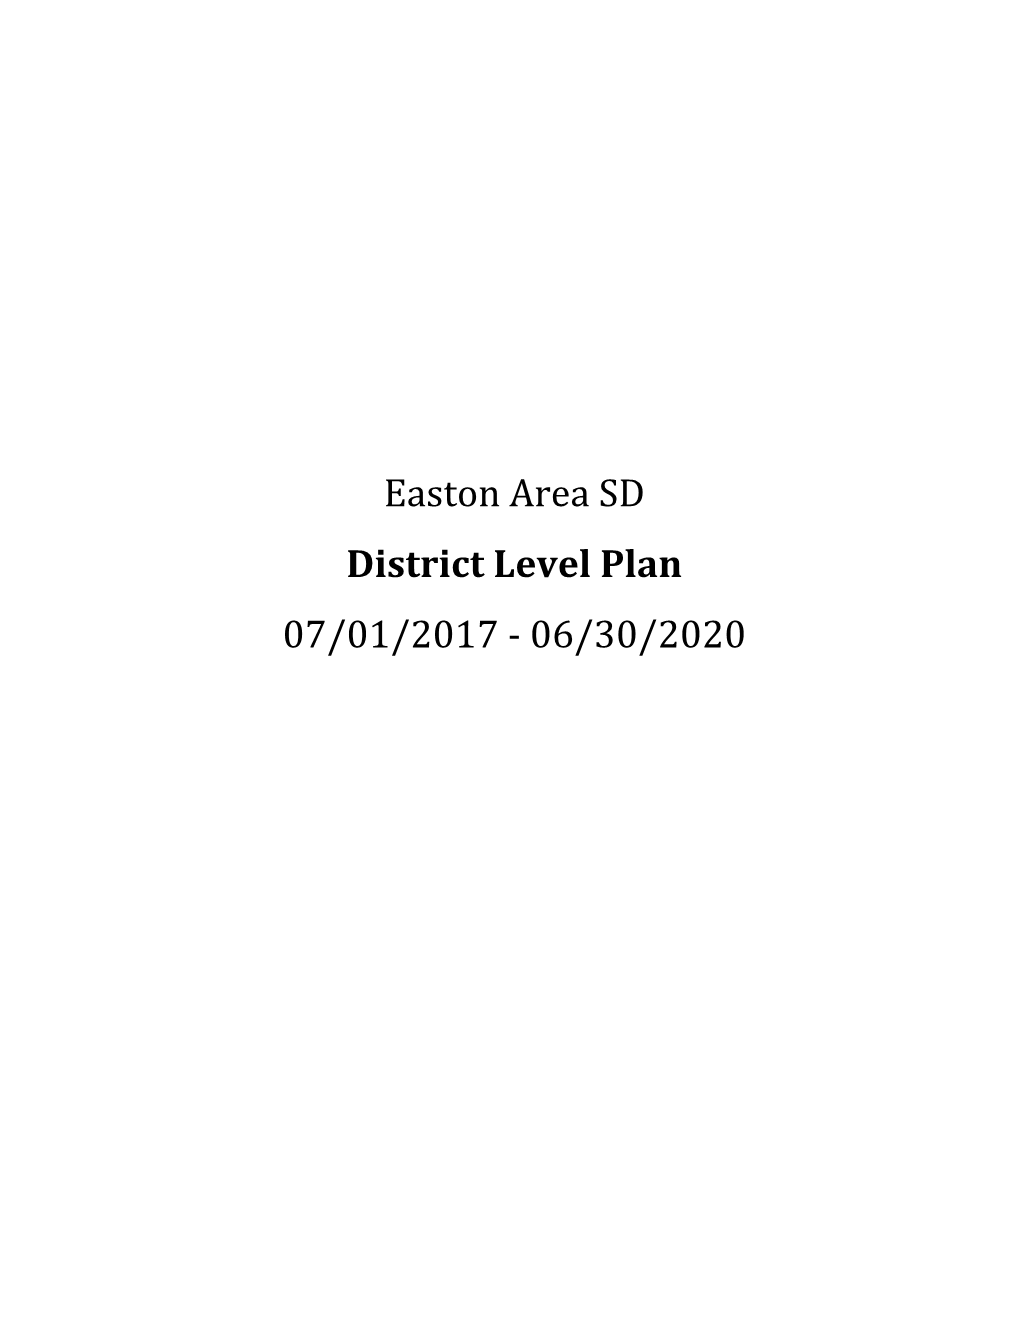 Easton Area SD District Level Plan 07/01/2017 -‐ 06/30/2020